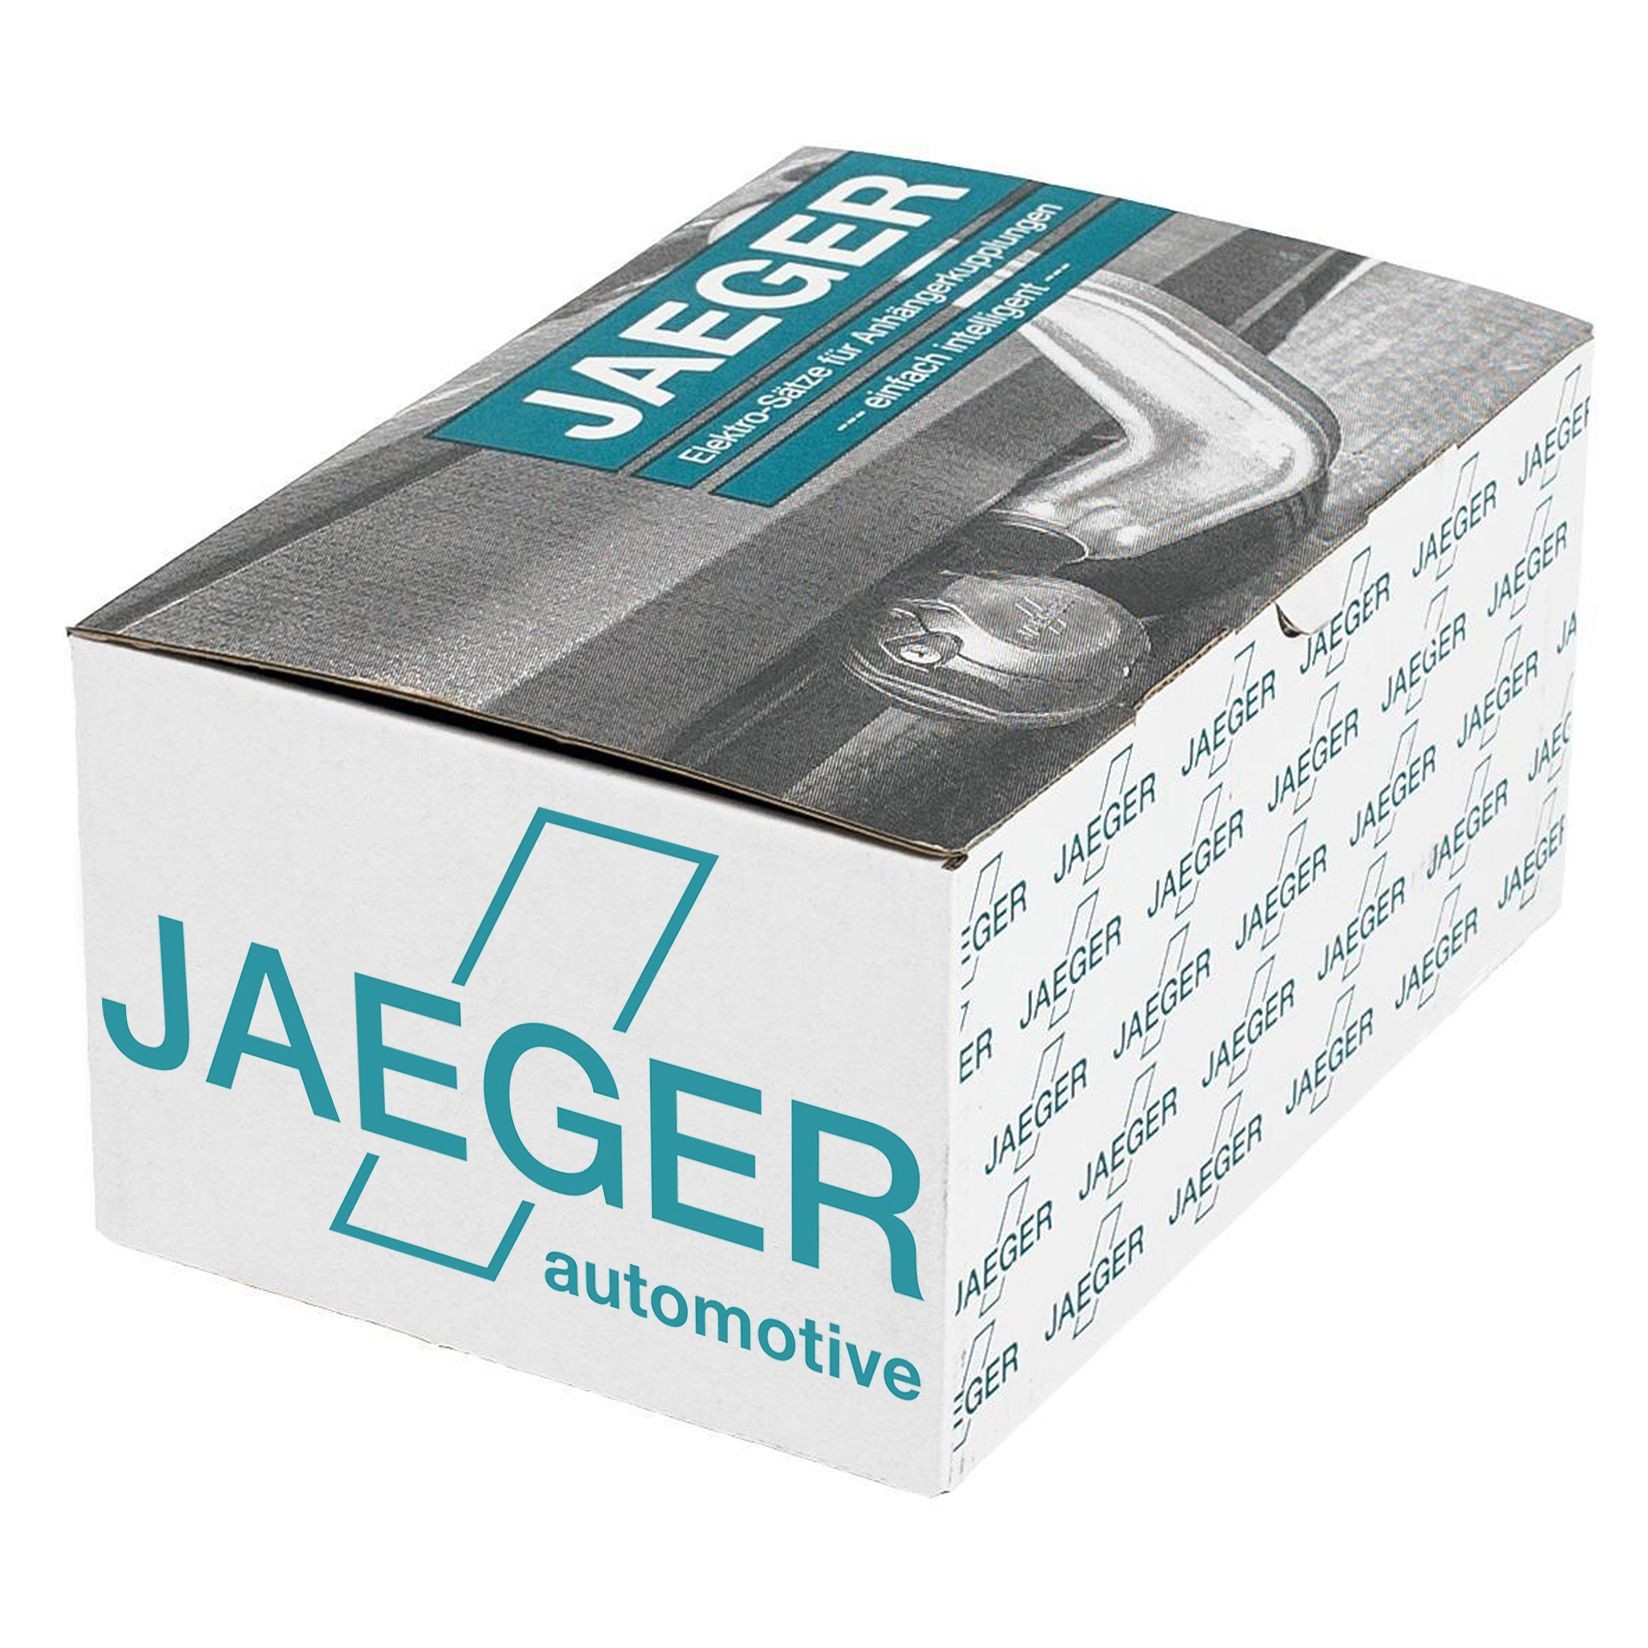 Nissan Towbar electric kit JAEGER 12140510 at a good price